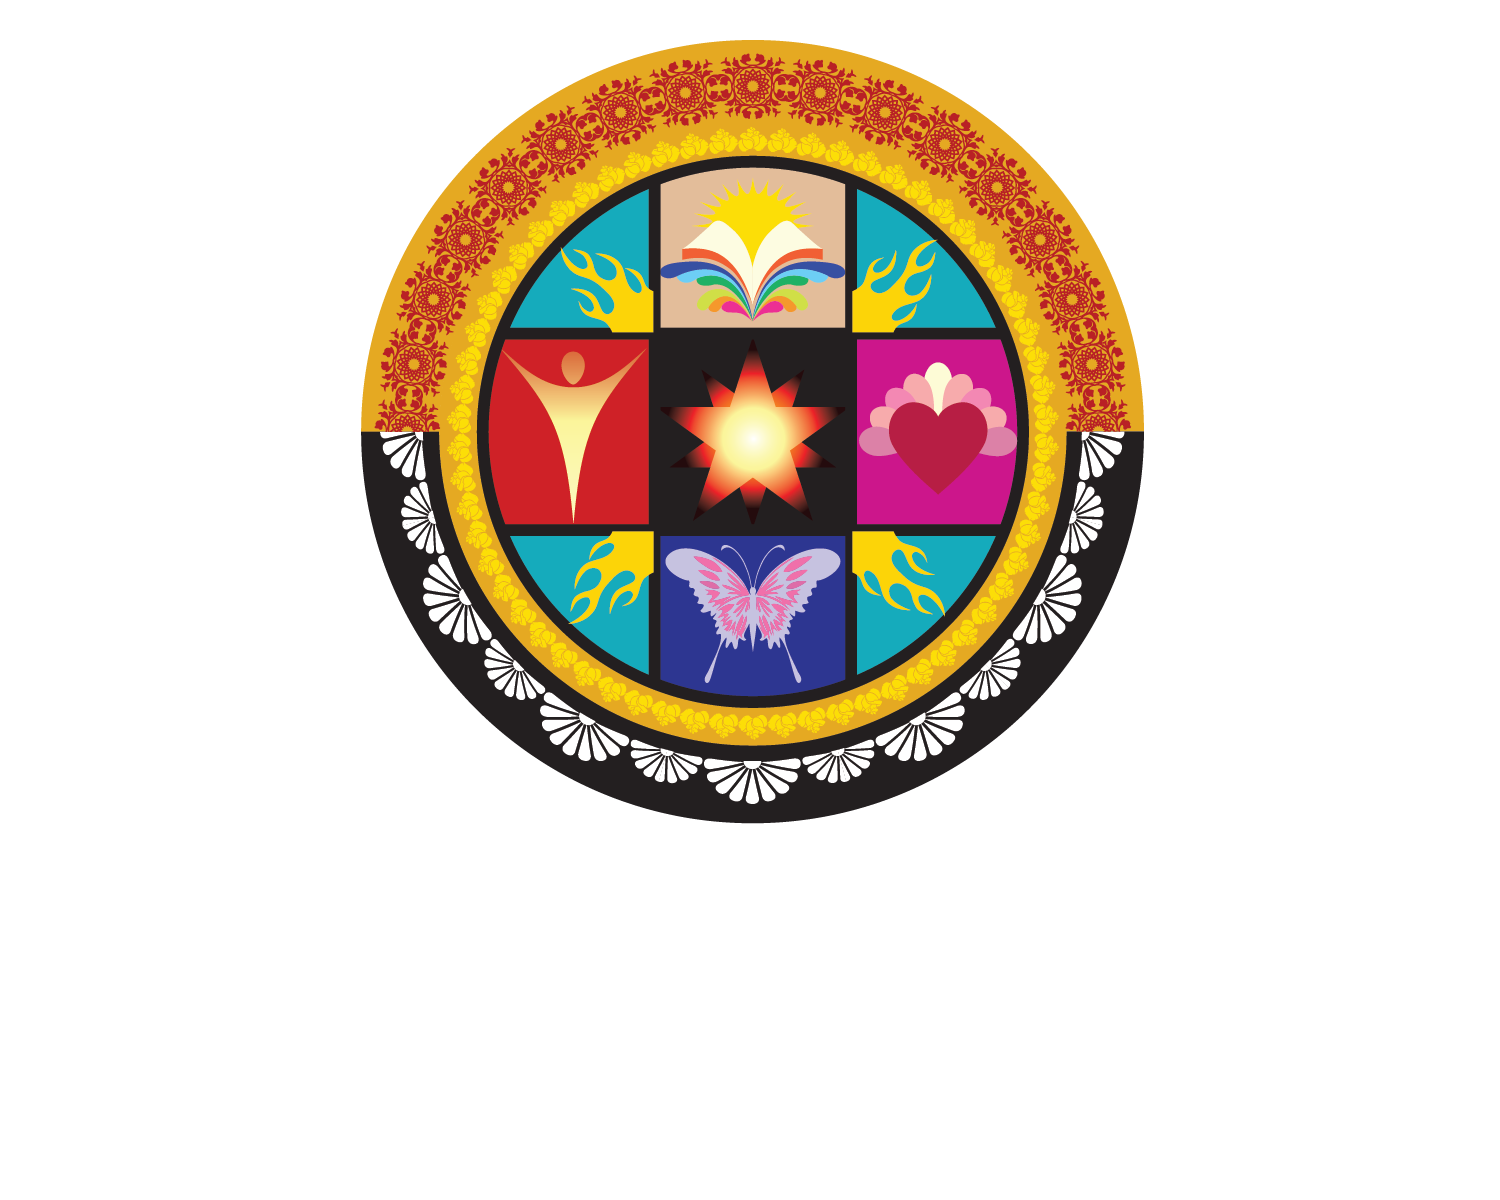 National Institute of Flamenco